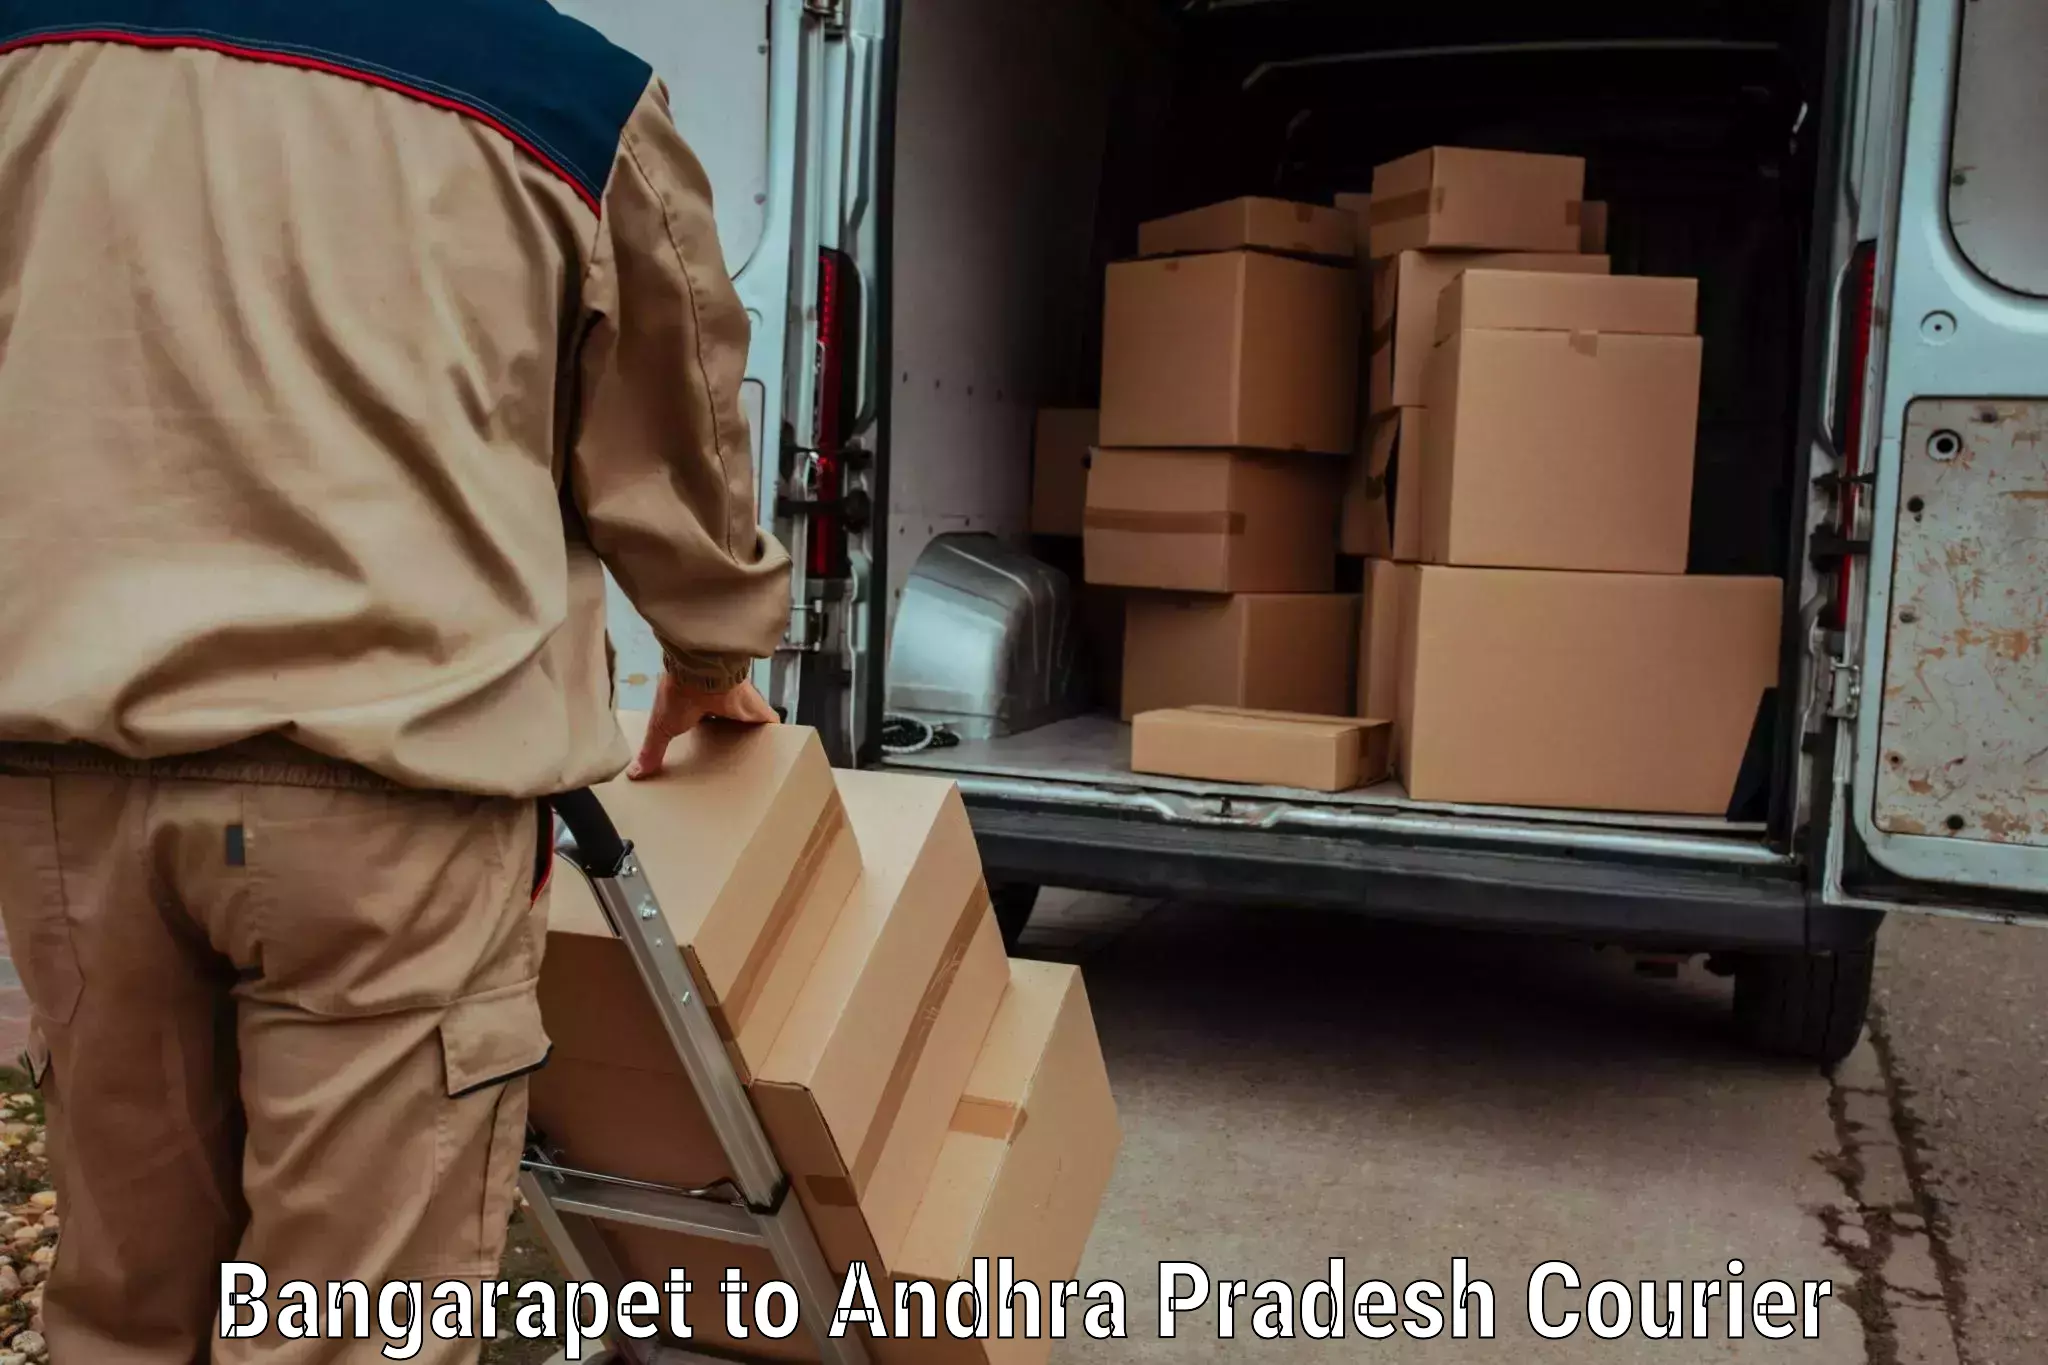 24/7 courier service Bangarapet to NIT Andhra Pradesh